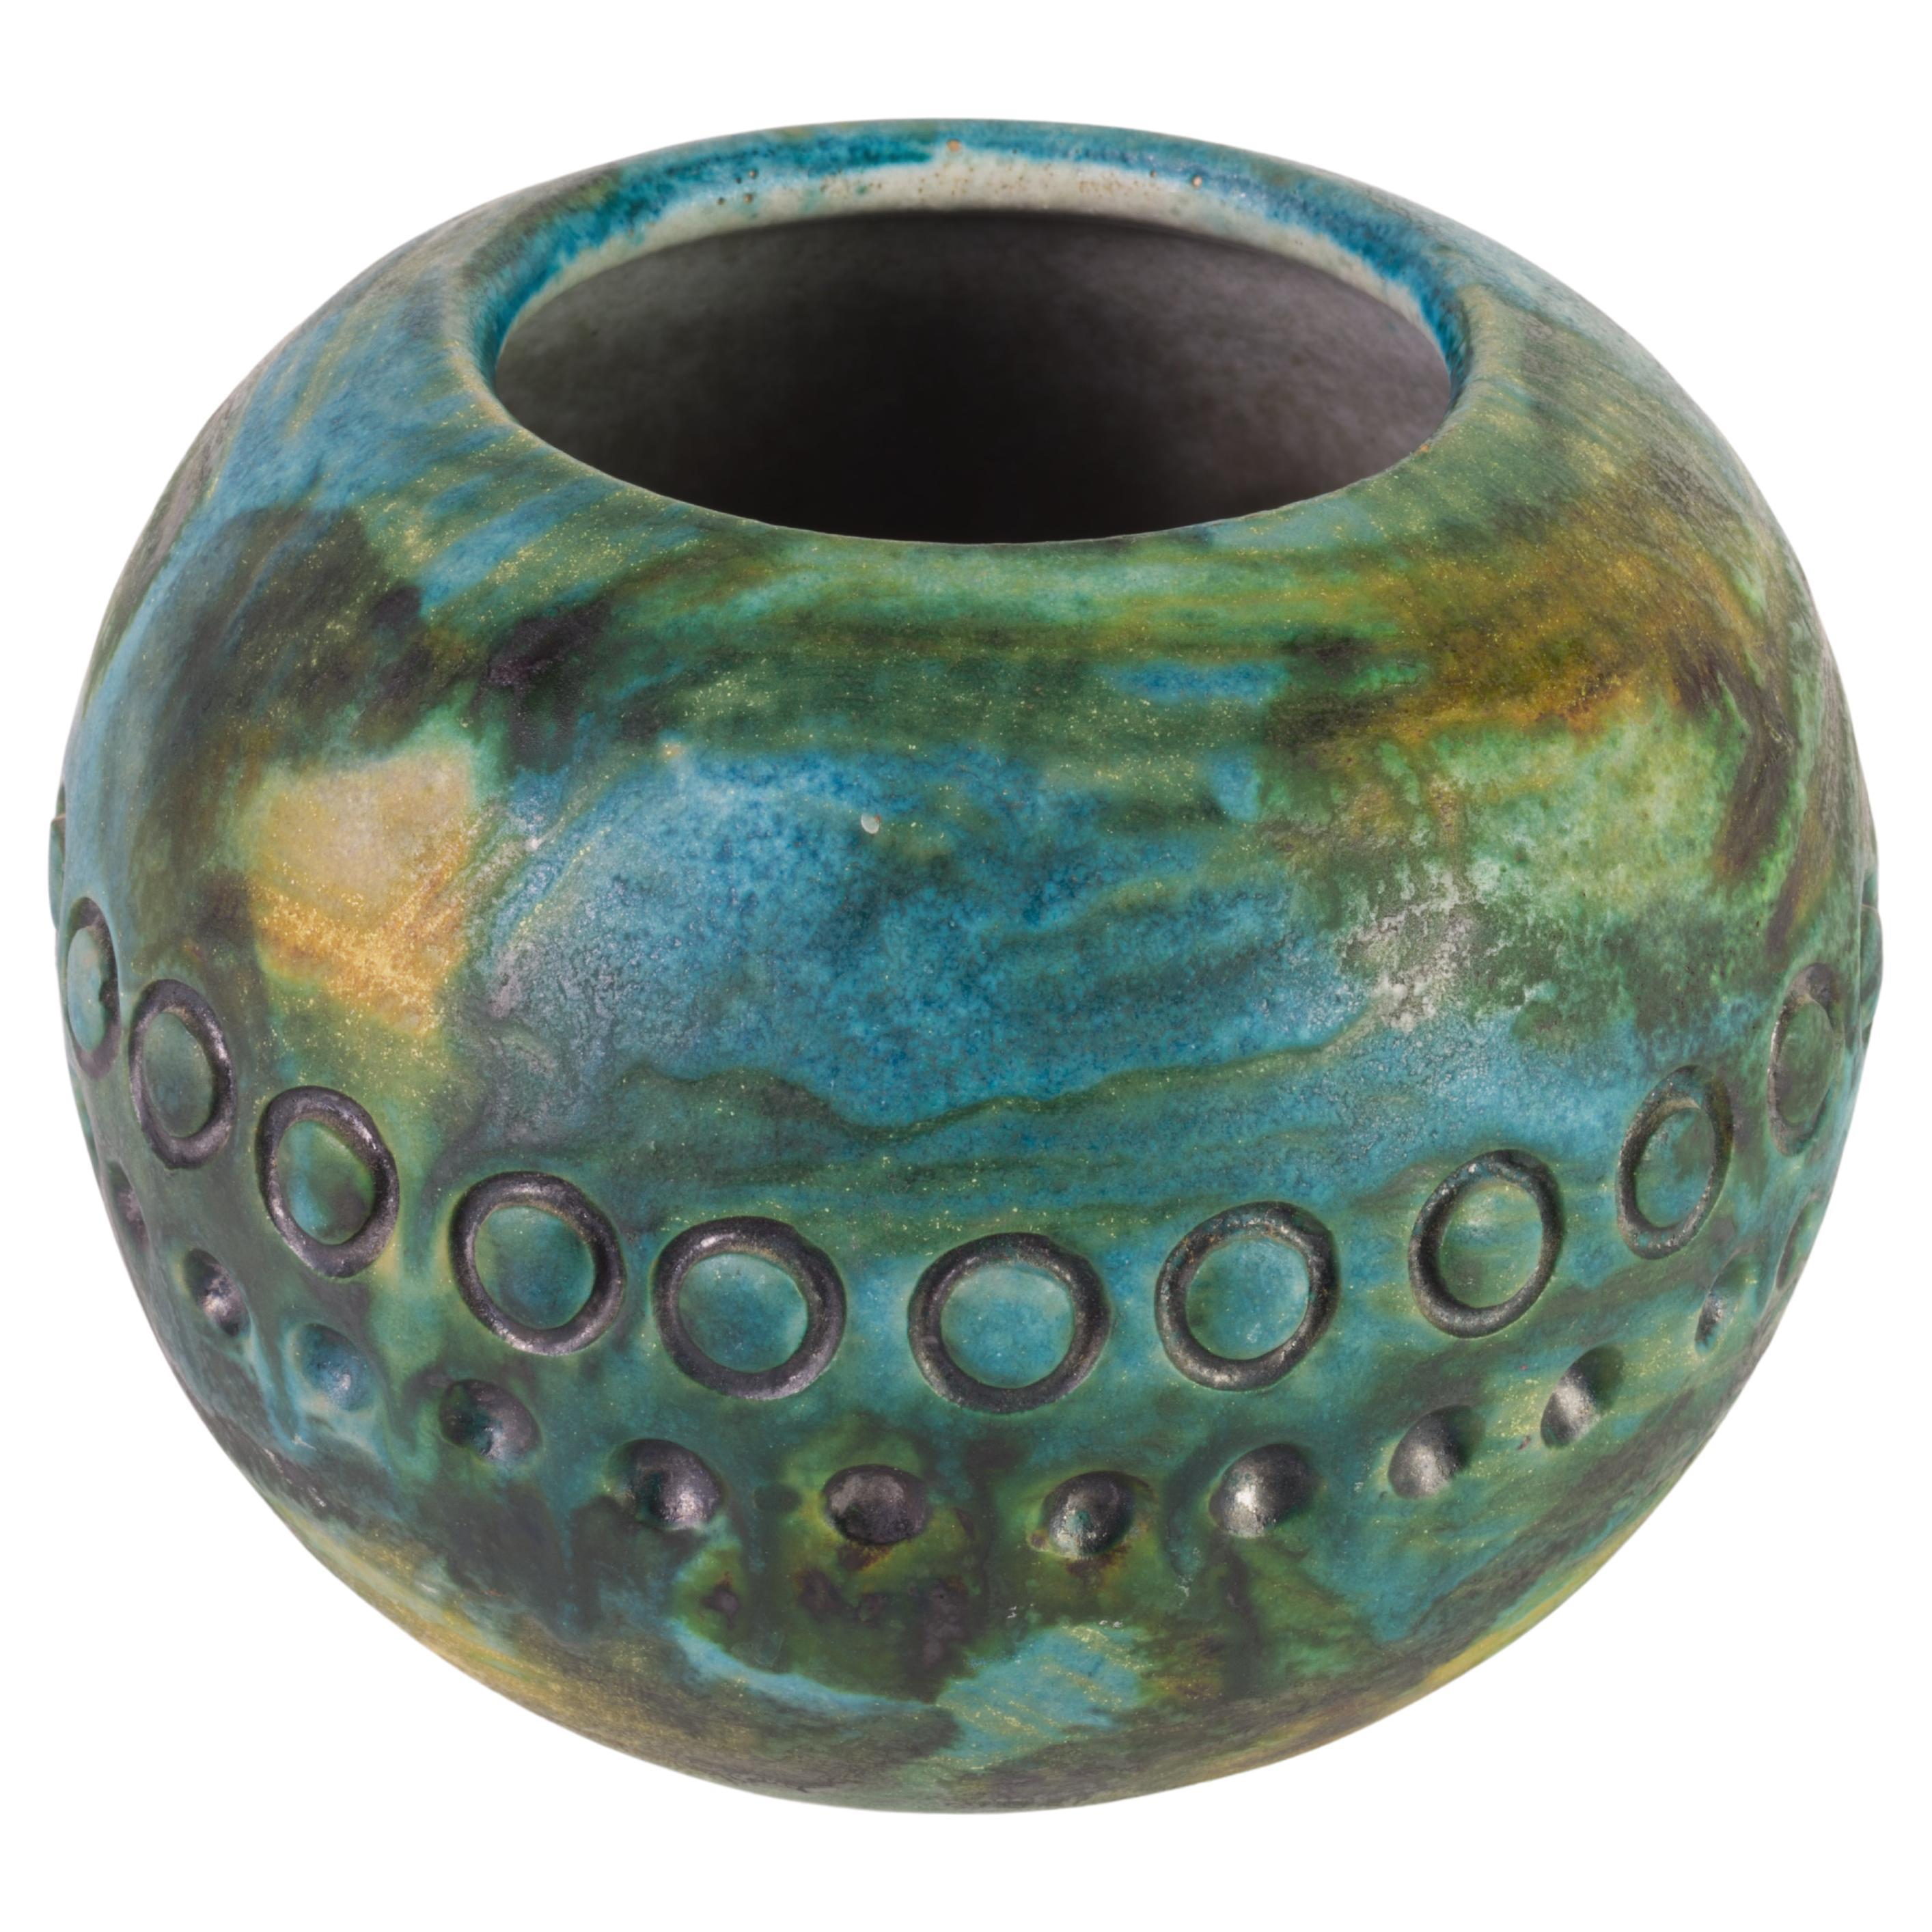 Alvino Bagni for Raymor Italy Sea Garden Vase Vessel Ceramic 1960s For Sale